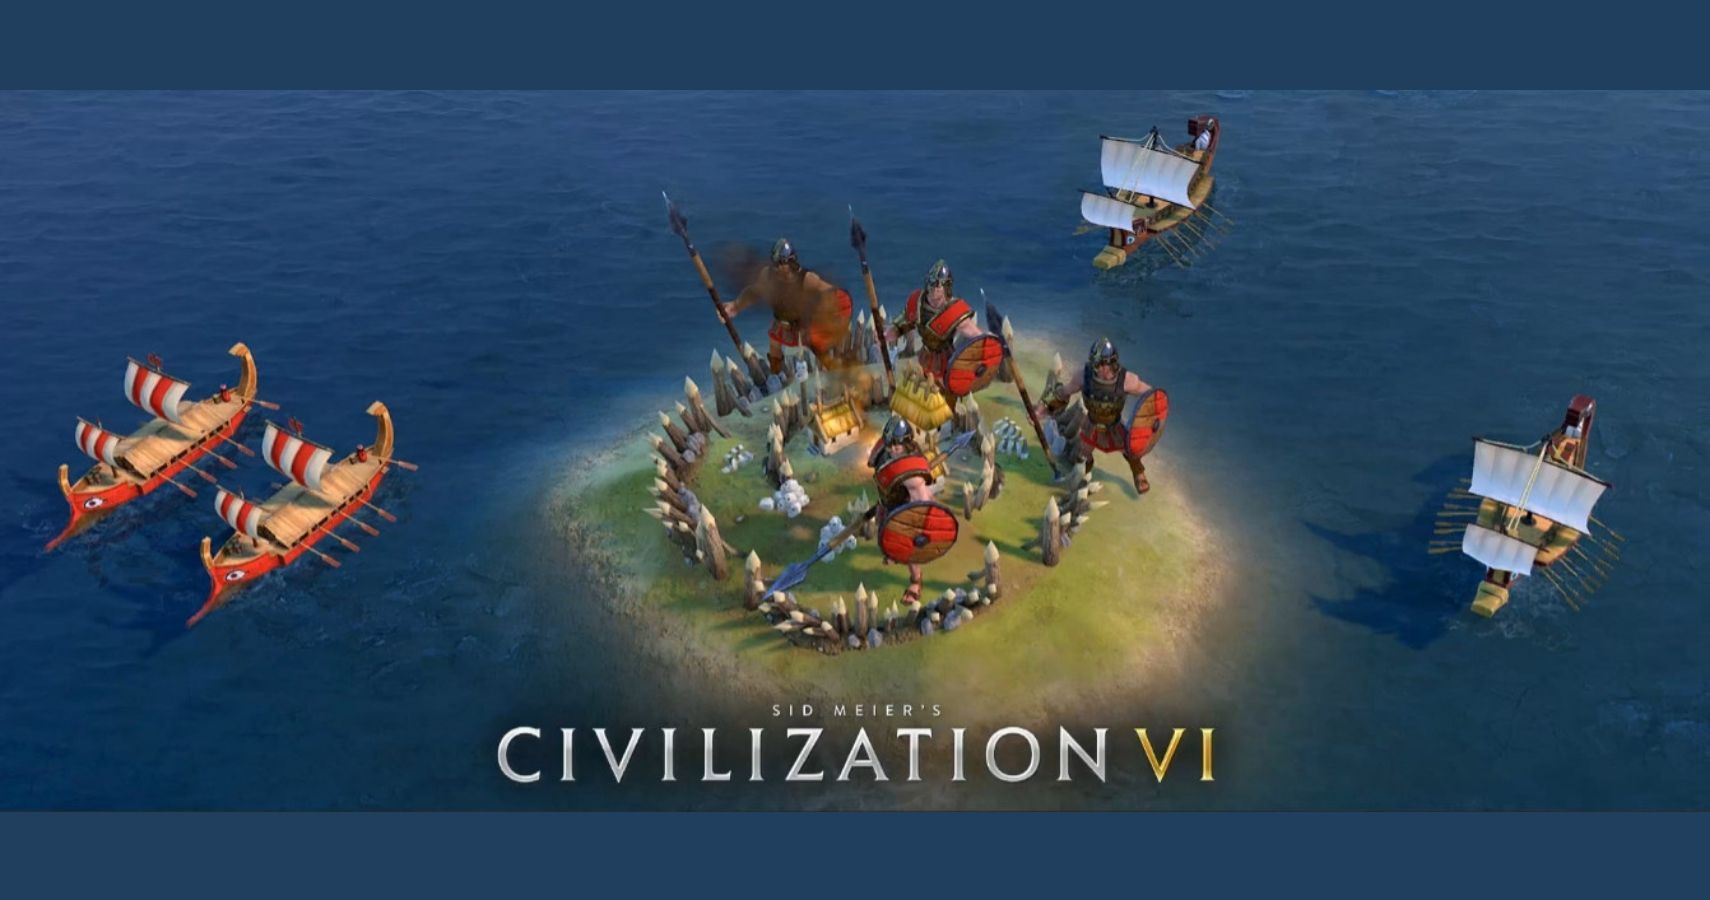 civilization vi update switch